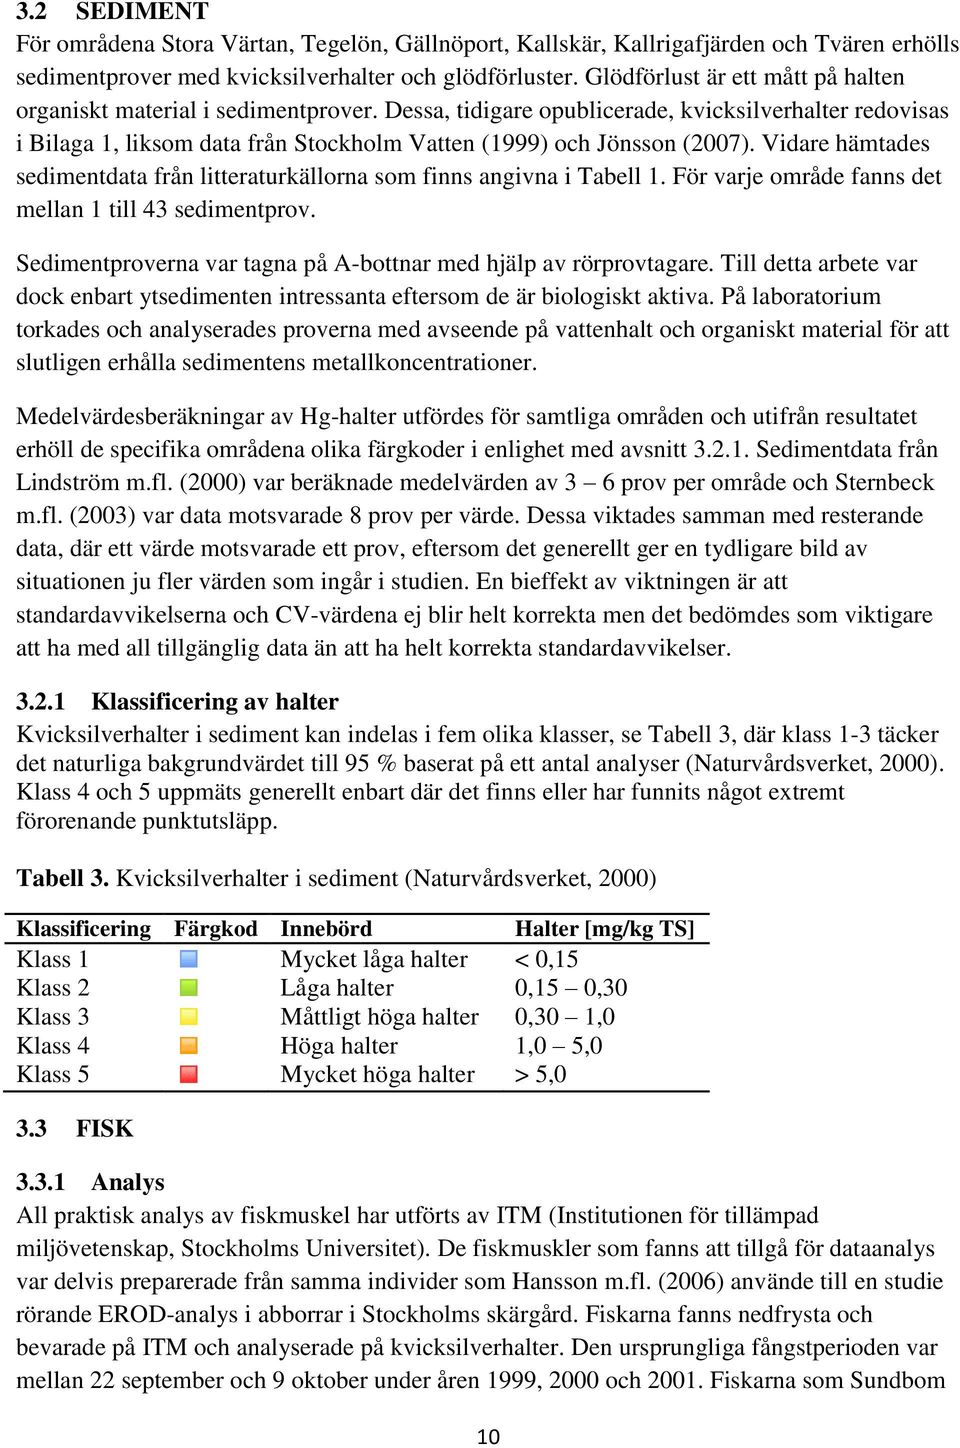 Dessa, tidigare opublicerade, kvicksilverhalter redovisas i Bilaga 1, liksom data från Stockholm Vatten (1999) och Jönsson (2007).